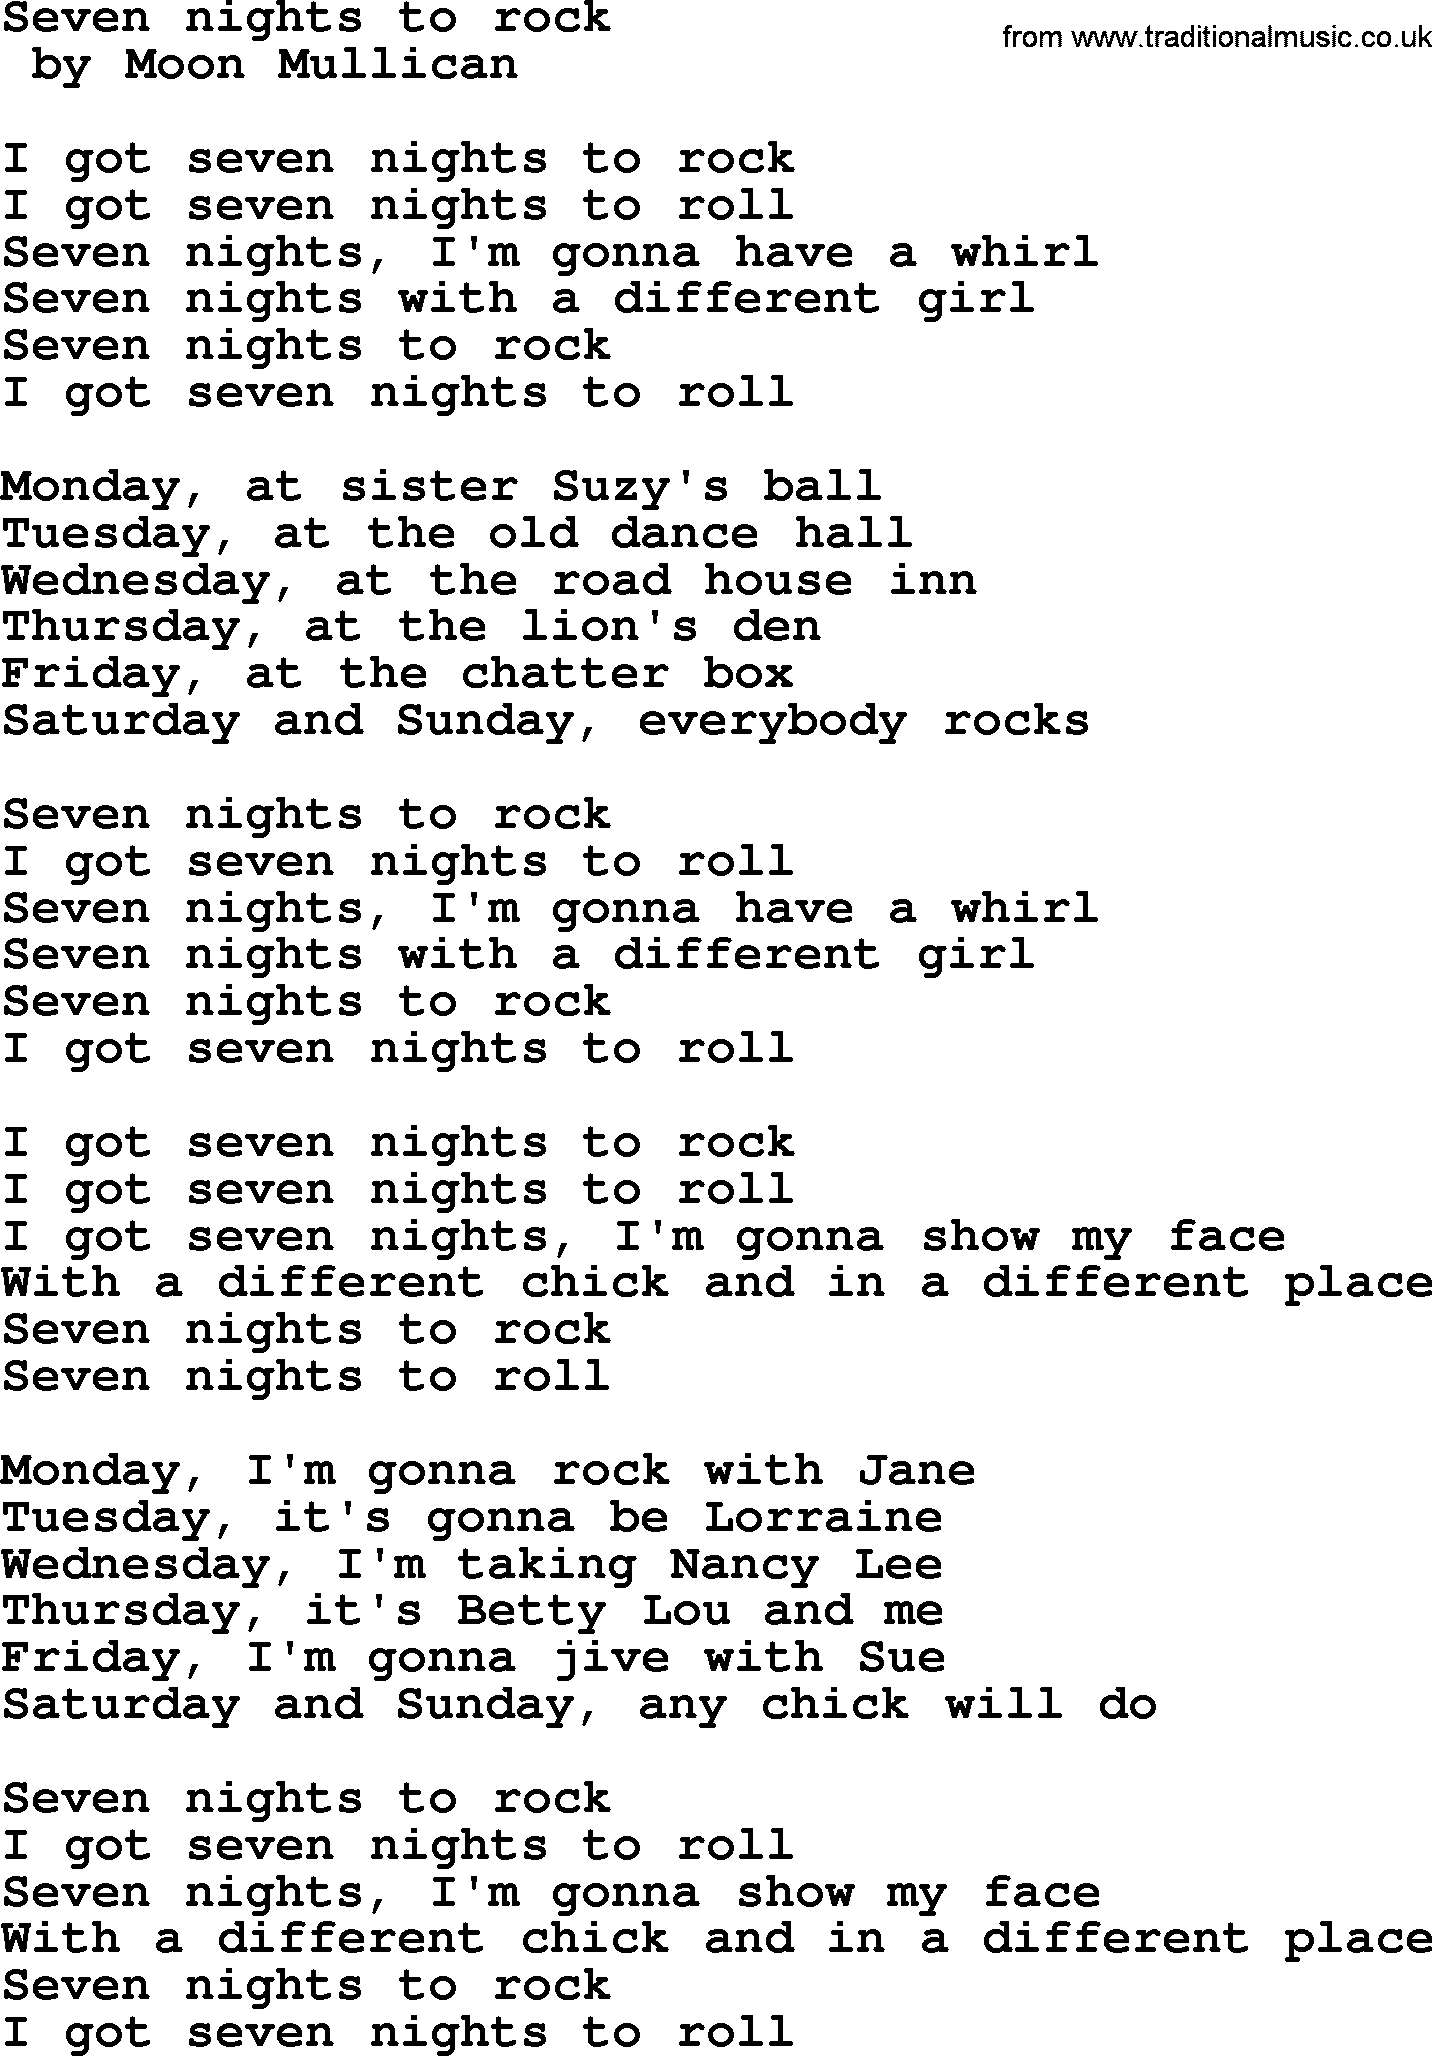 Bruce Springsteen song: Seven Nights To Rock lyrics